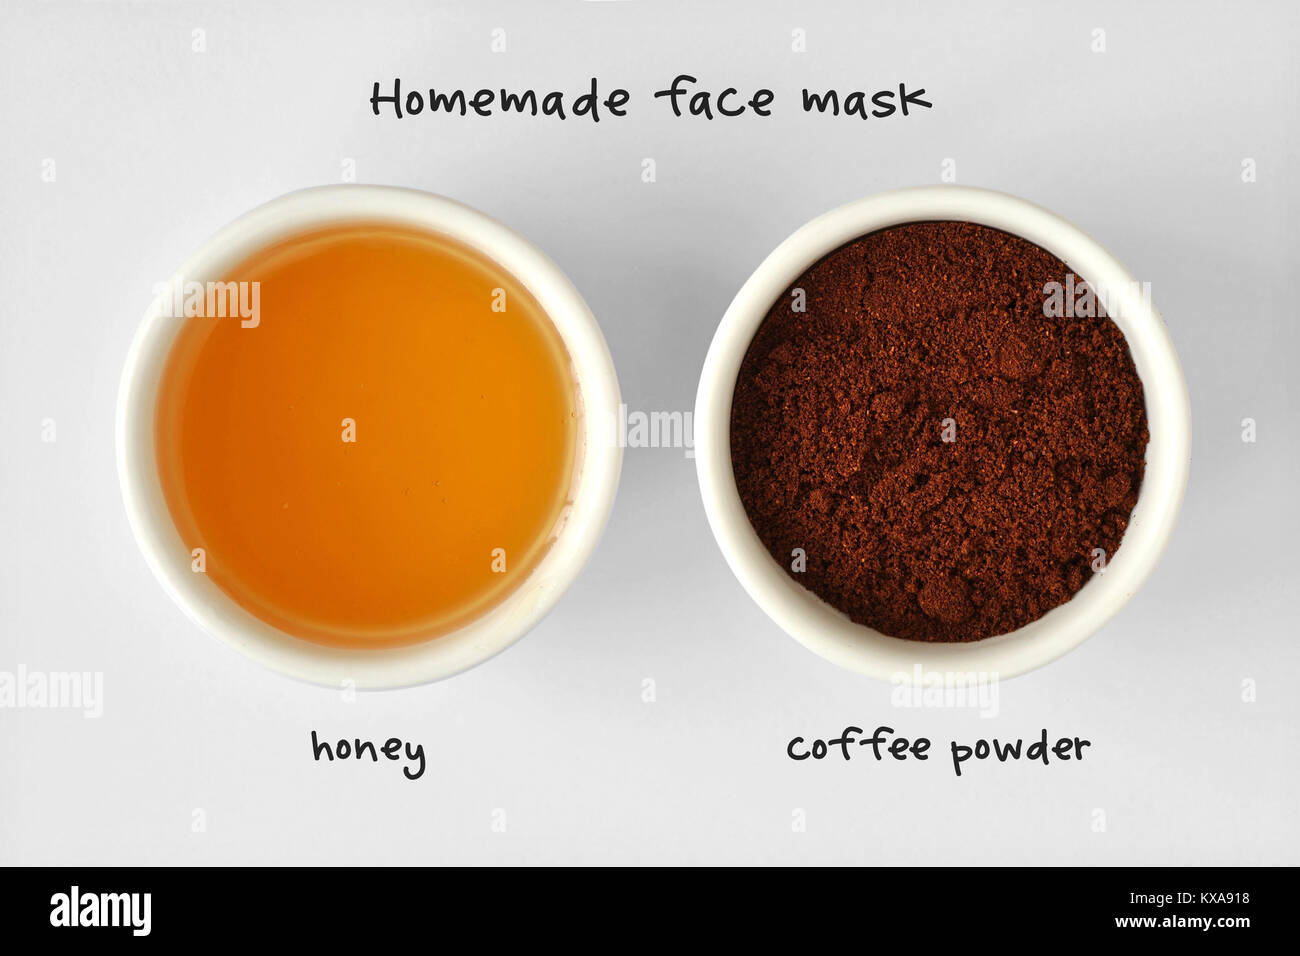 Masque visage fait maison composé de miel et de la poudre de café - Fond  blanc Photo Stock - Alamy